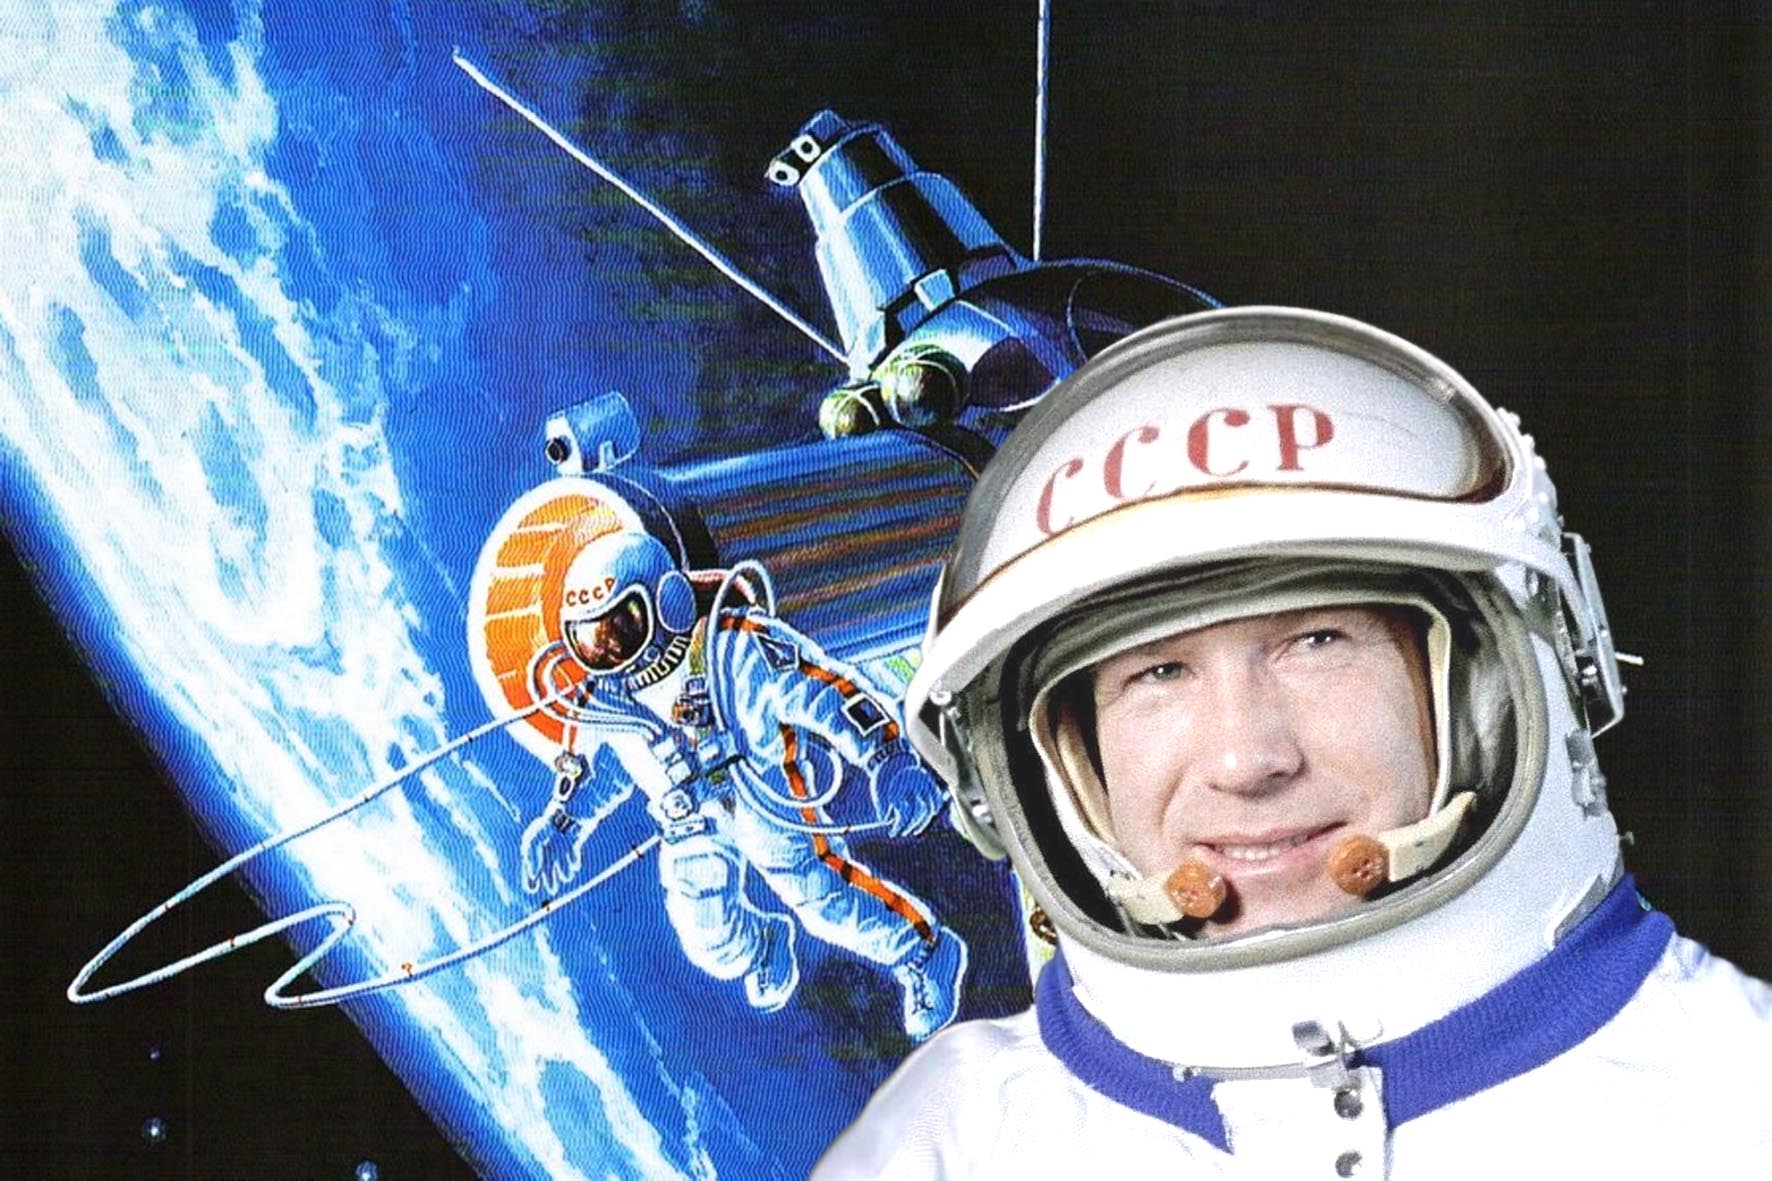 Первый выход в открытый космос дата. Выход в открытый космос Алексея Архиповича Леонова.